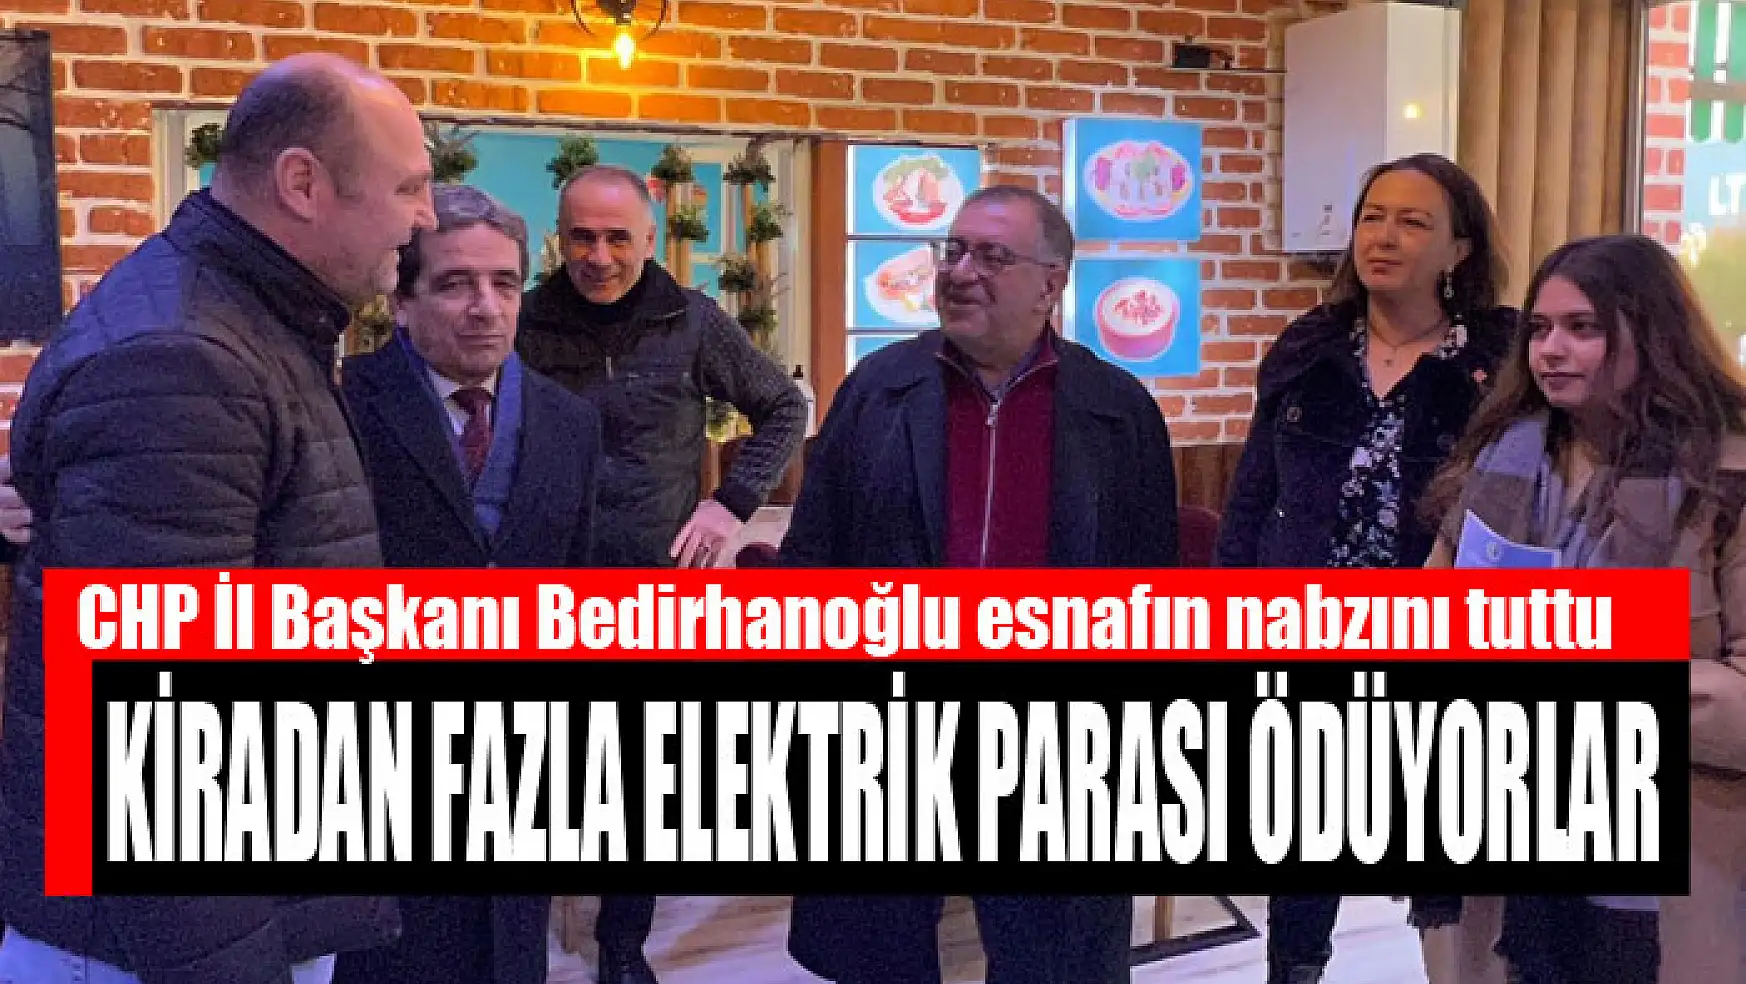 CHP İl Başkanı Bedirhanoğlu esnafın nabzını tuttu Kiradan fazla elektrik parası ödüyorlar